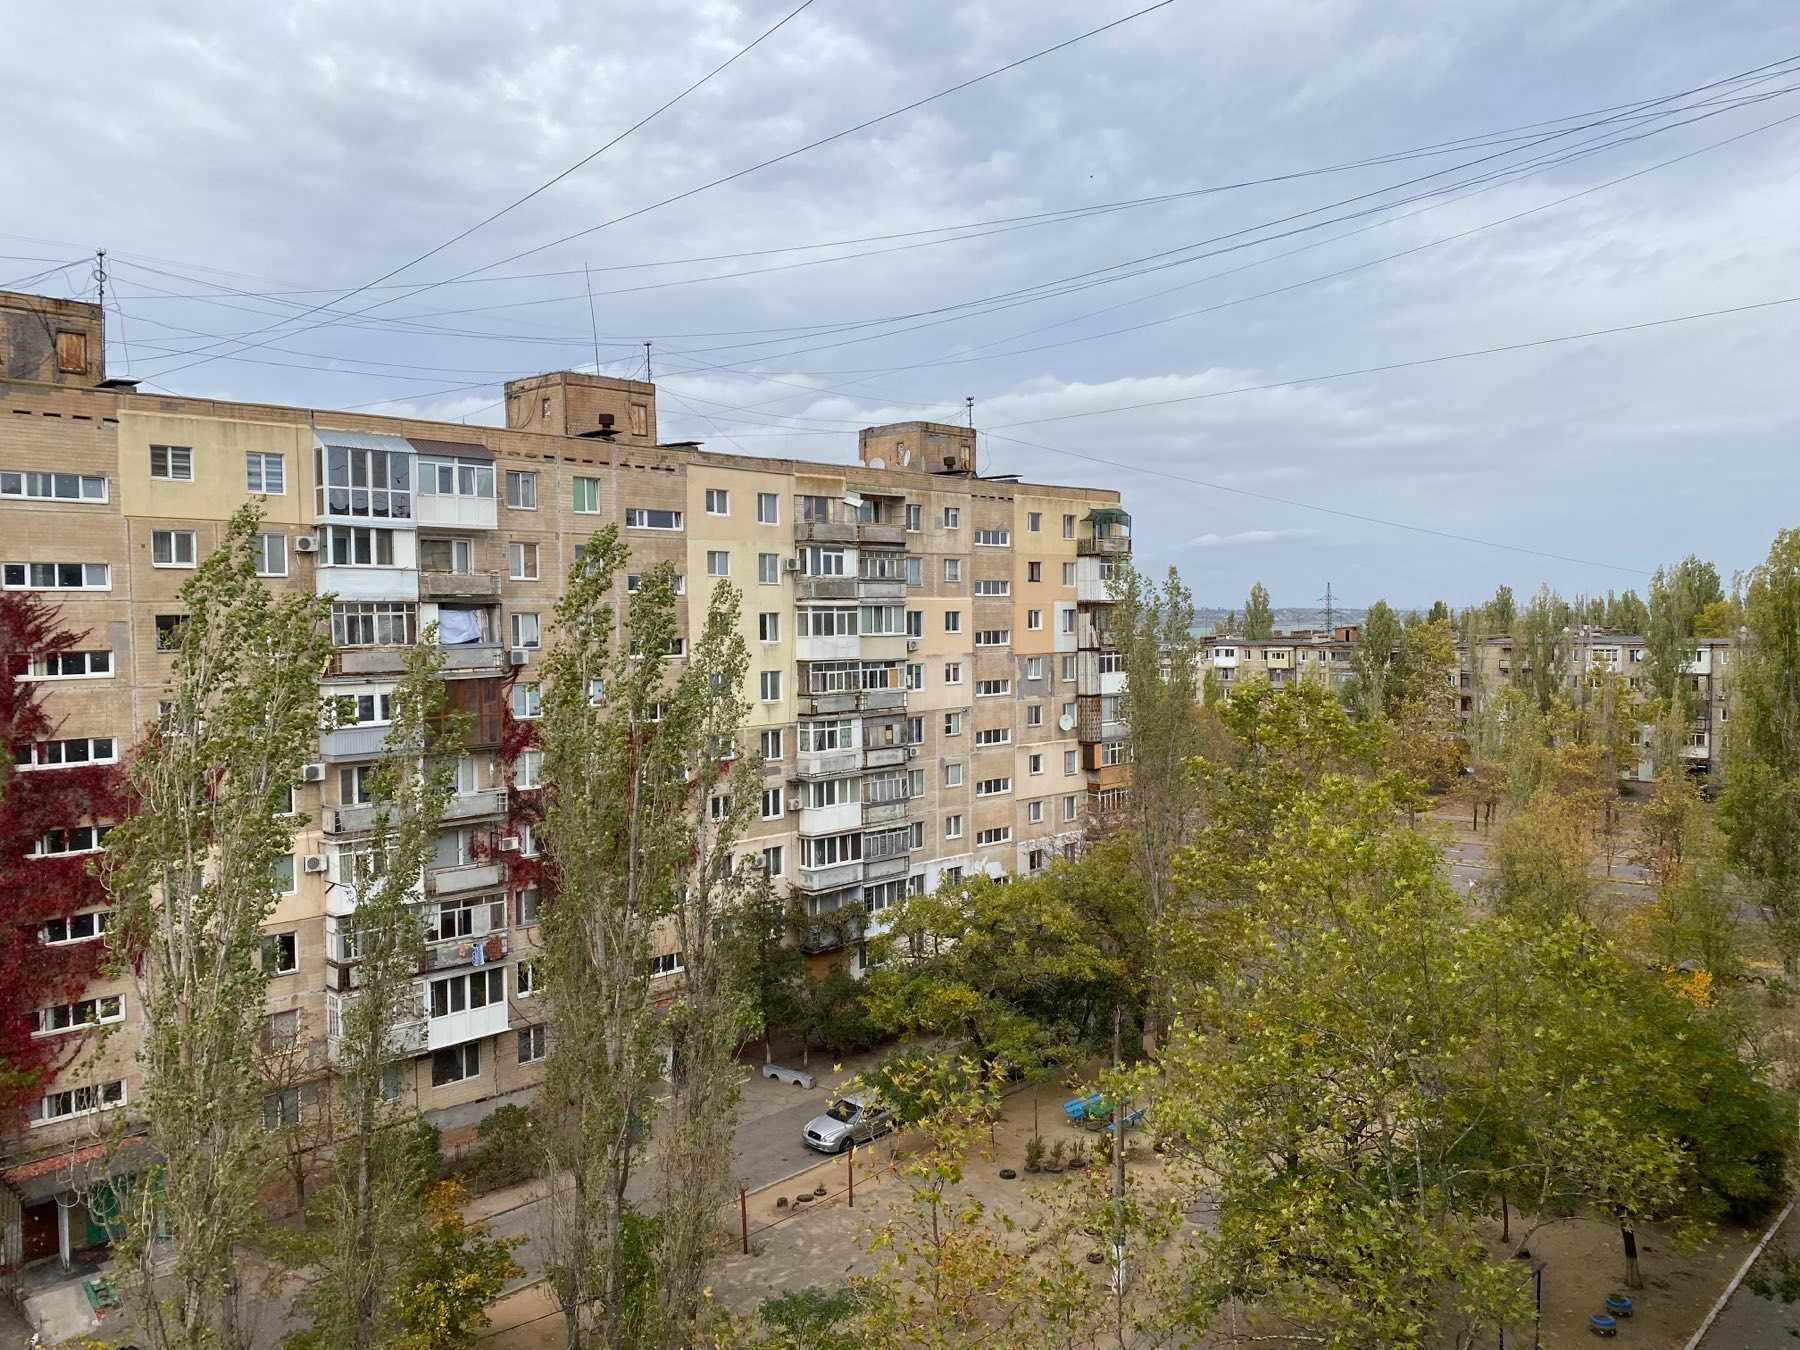 Продаётся трёхкомнатная квартира в Корабельном районе Корабелов,6 S1